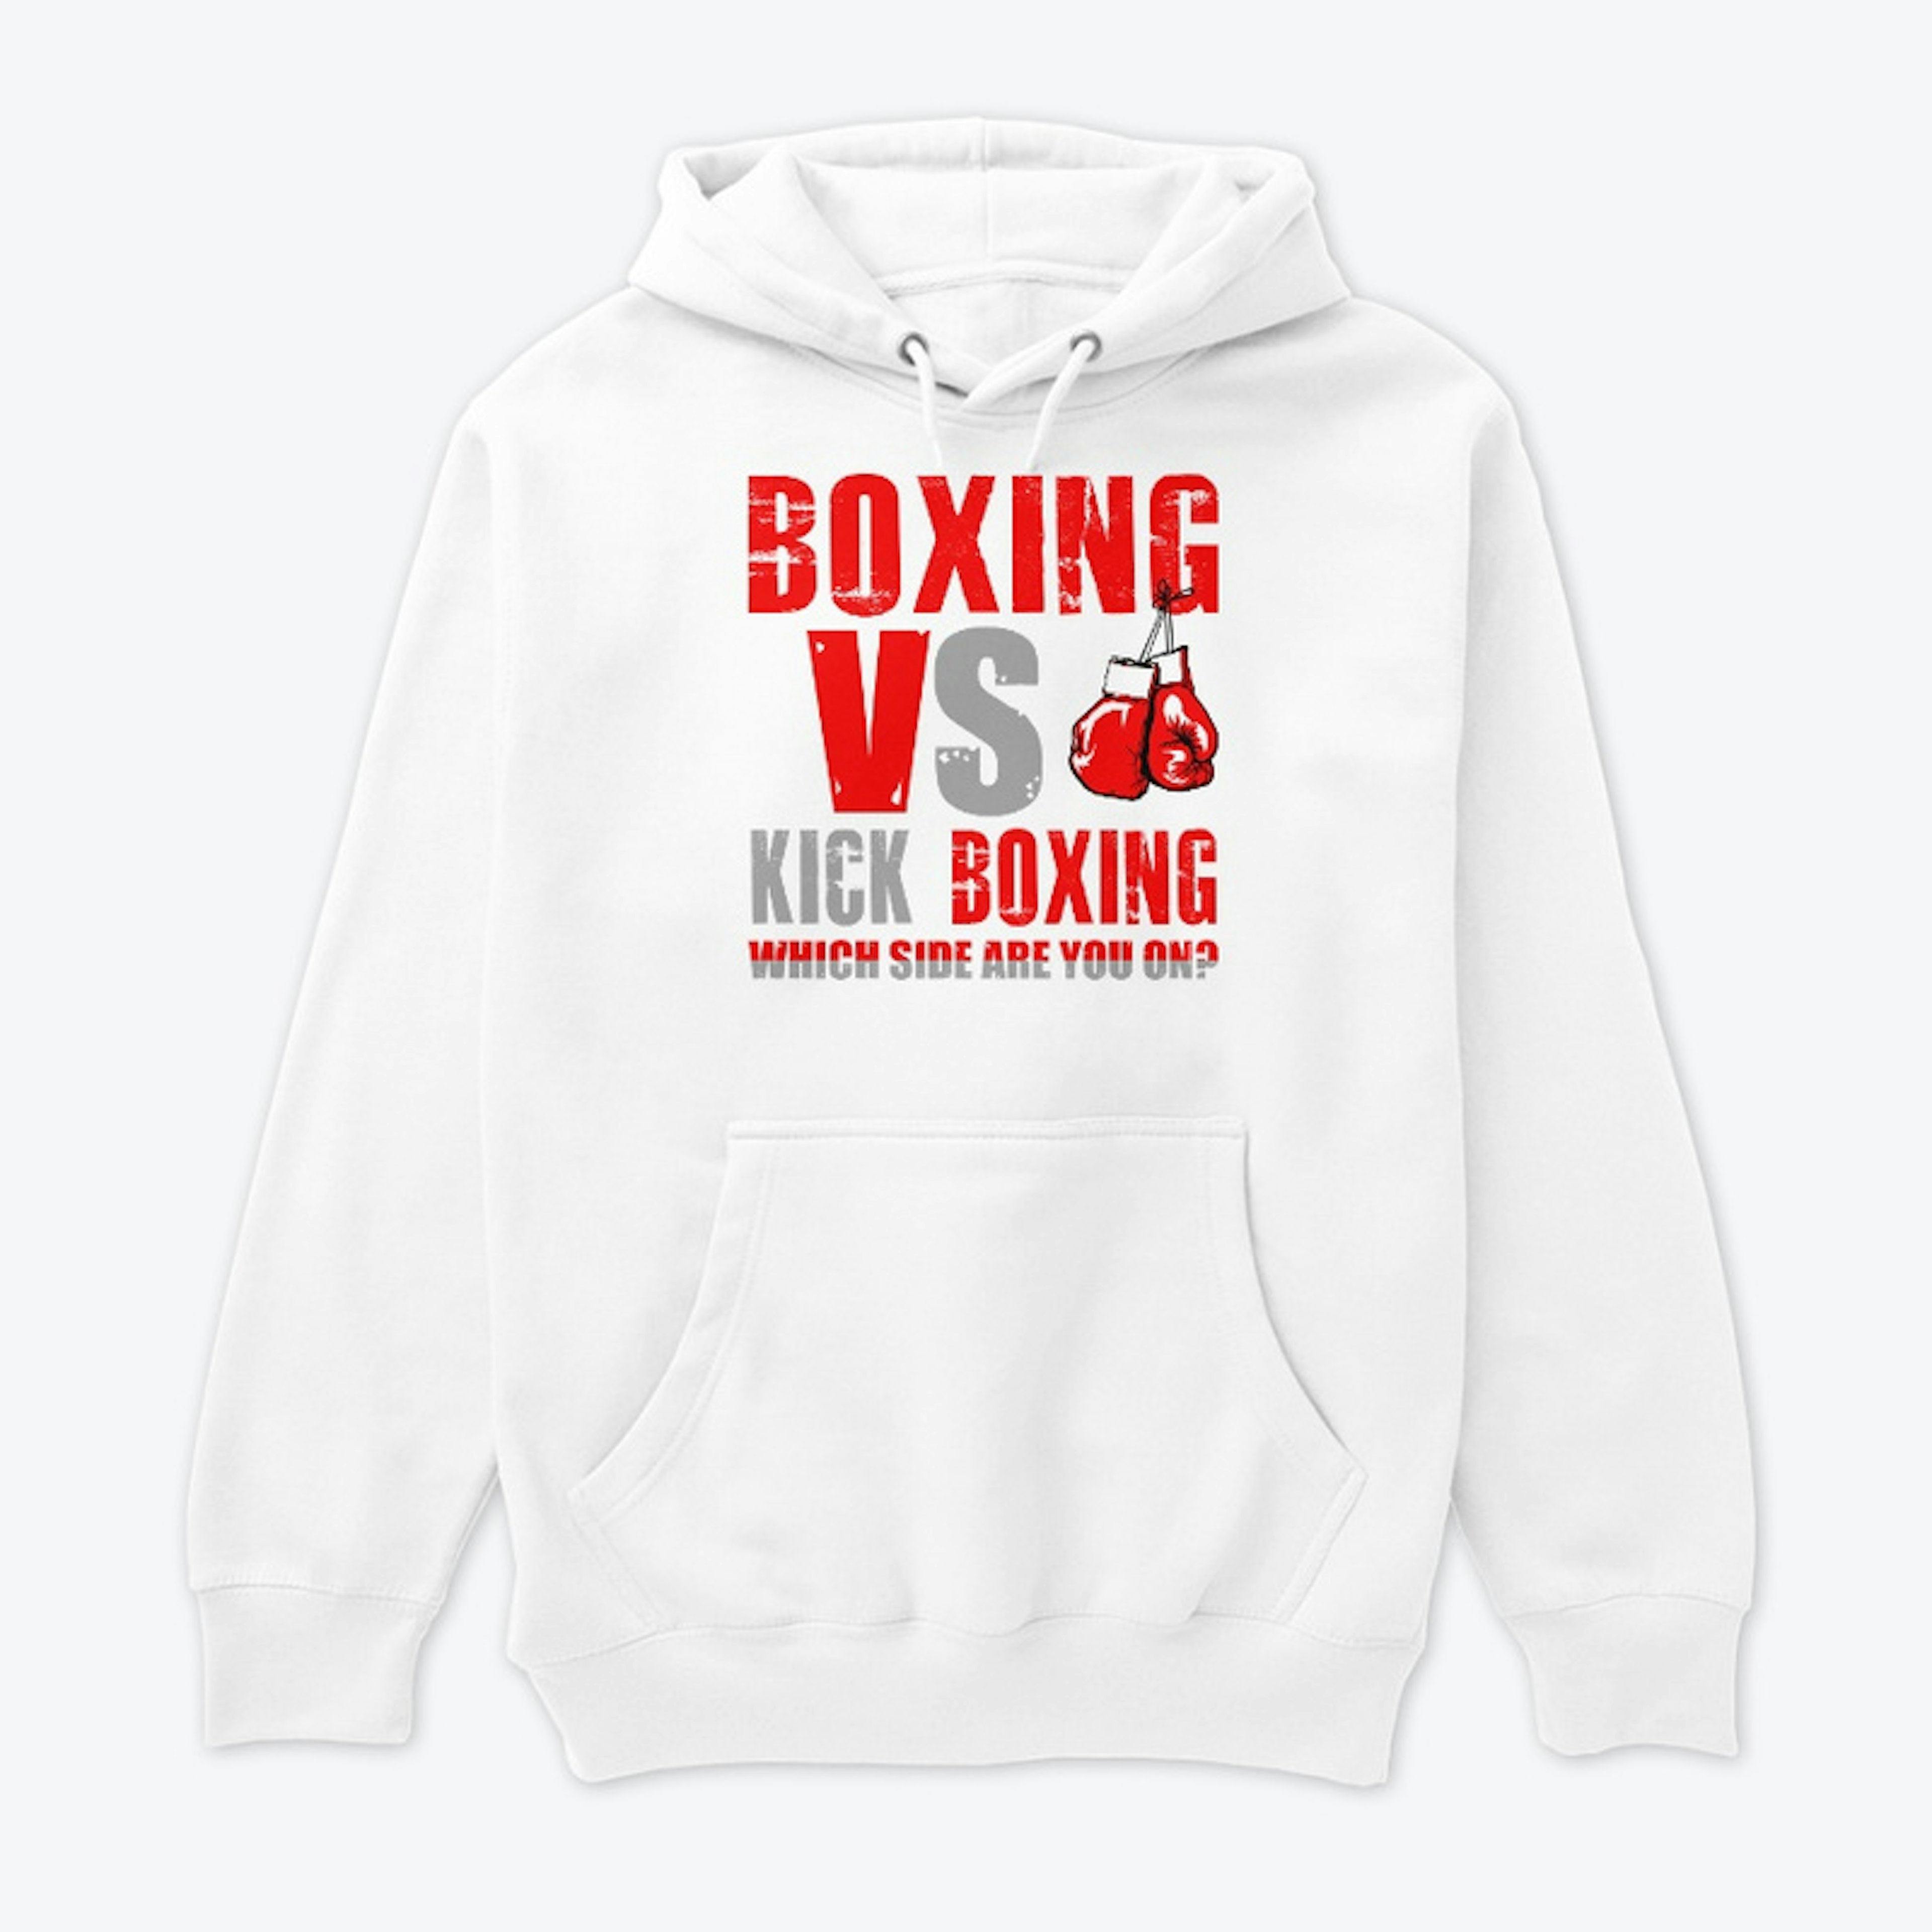 Boxing vs. Kick Boxing!